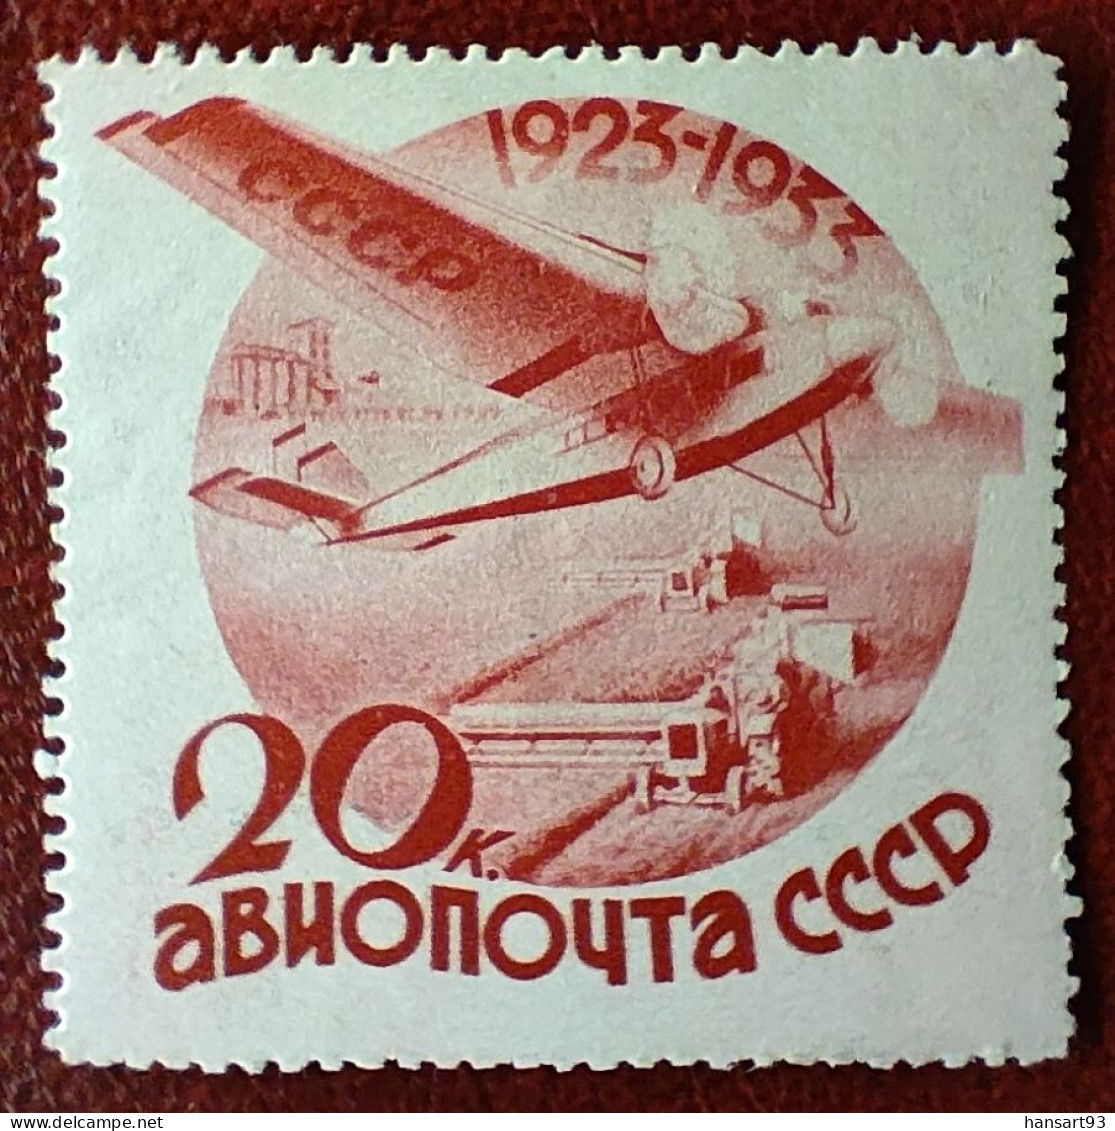 URSS Rare Poste Aérienne N° 43 N* TTB Avec Un Petit Pli Horizontal ! Cote 2020 : 50,00 Euros ! A Voir Absolument !! - Nuovi